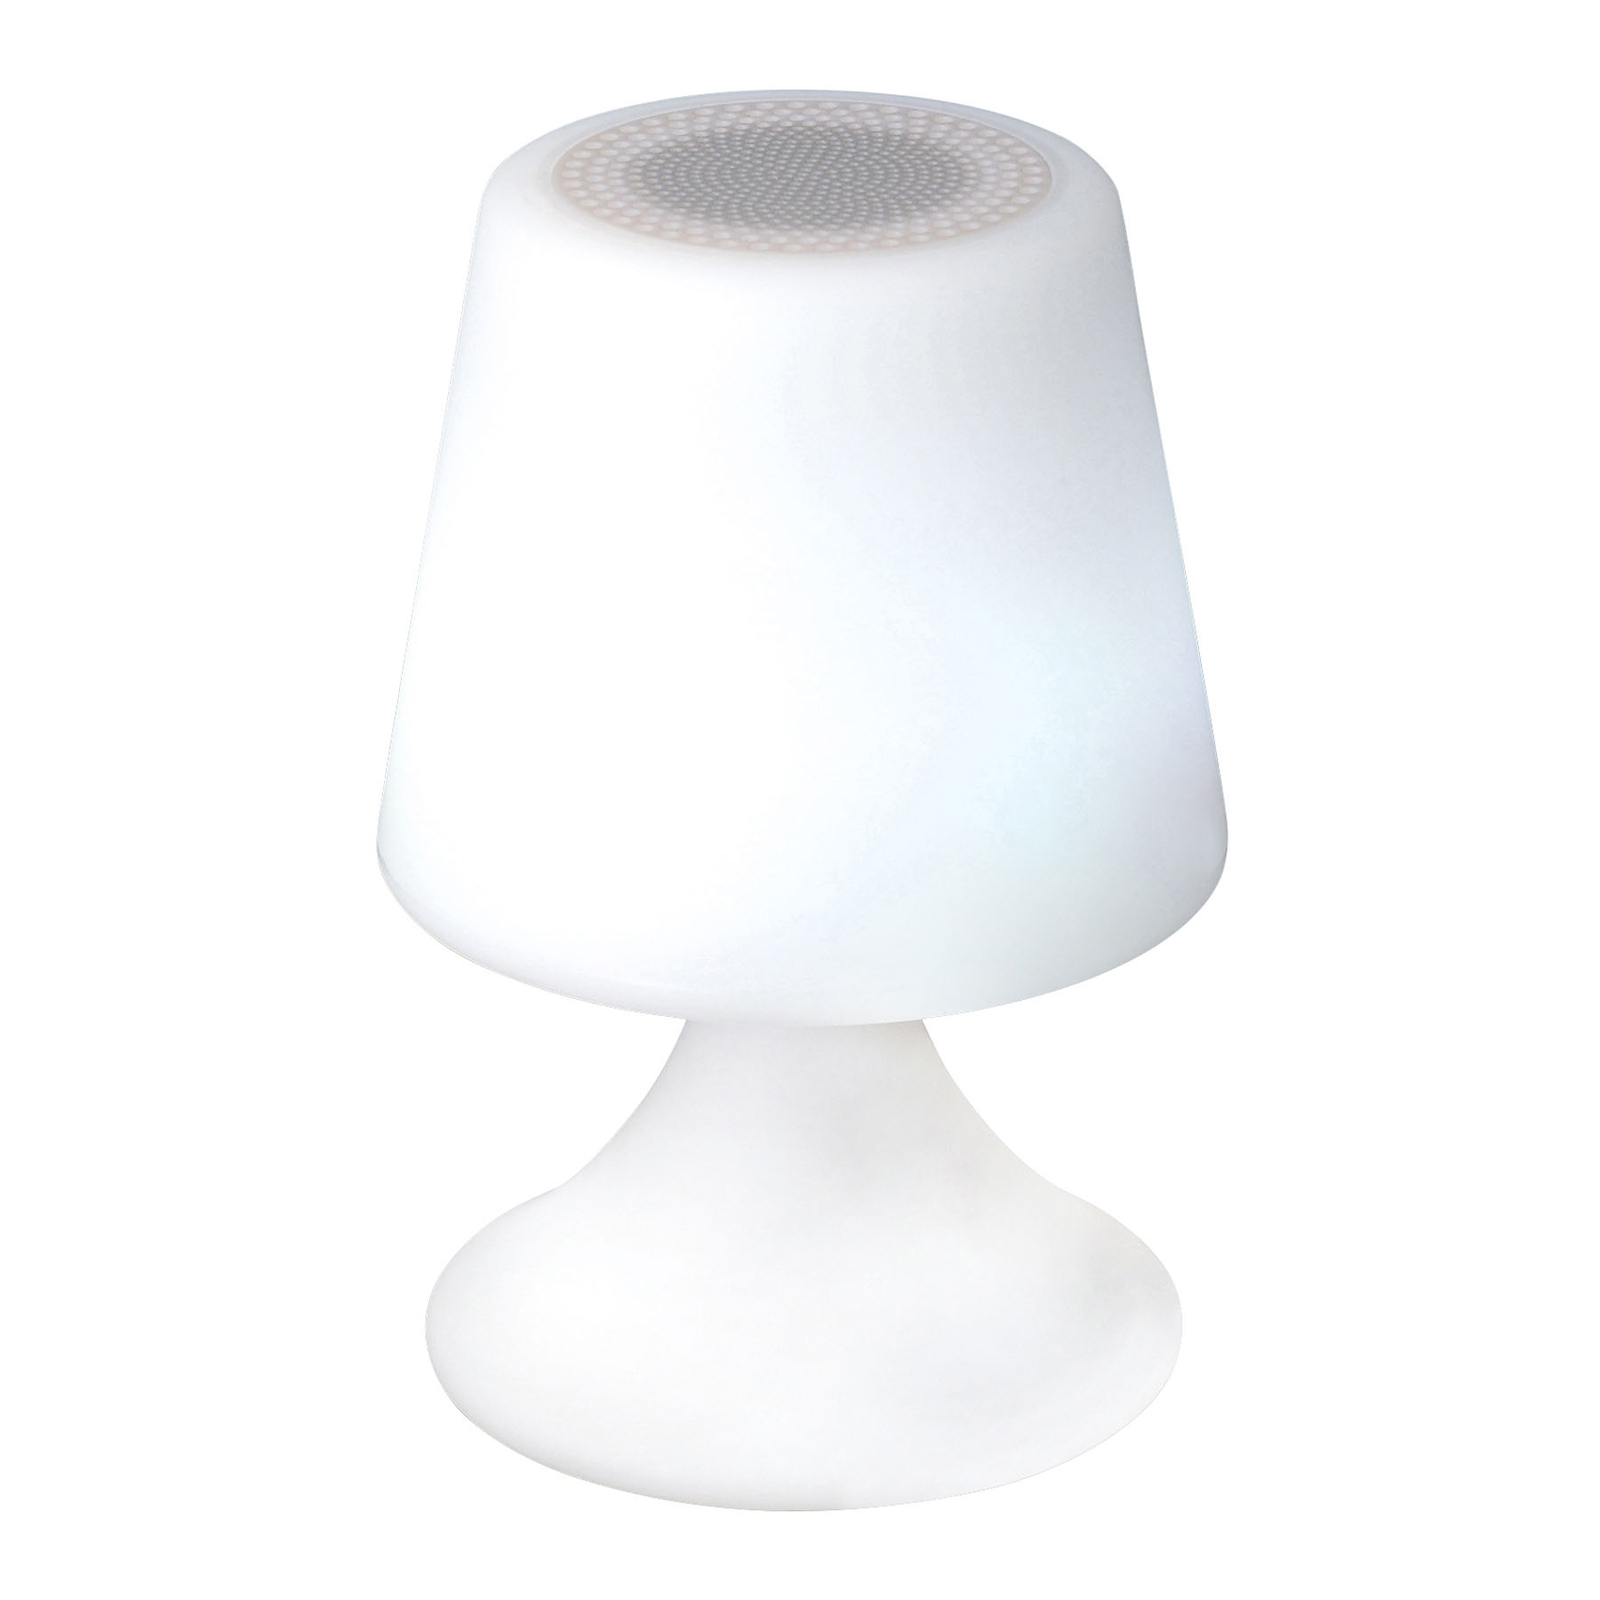 LED sfeerlamp Curbi met Bluetooth-luidspreker